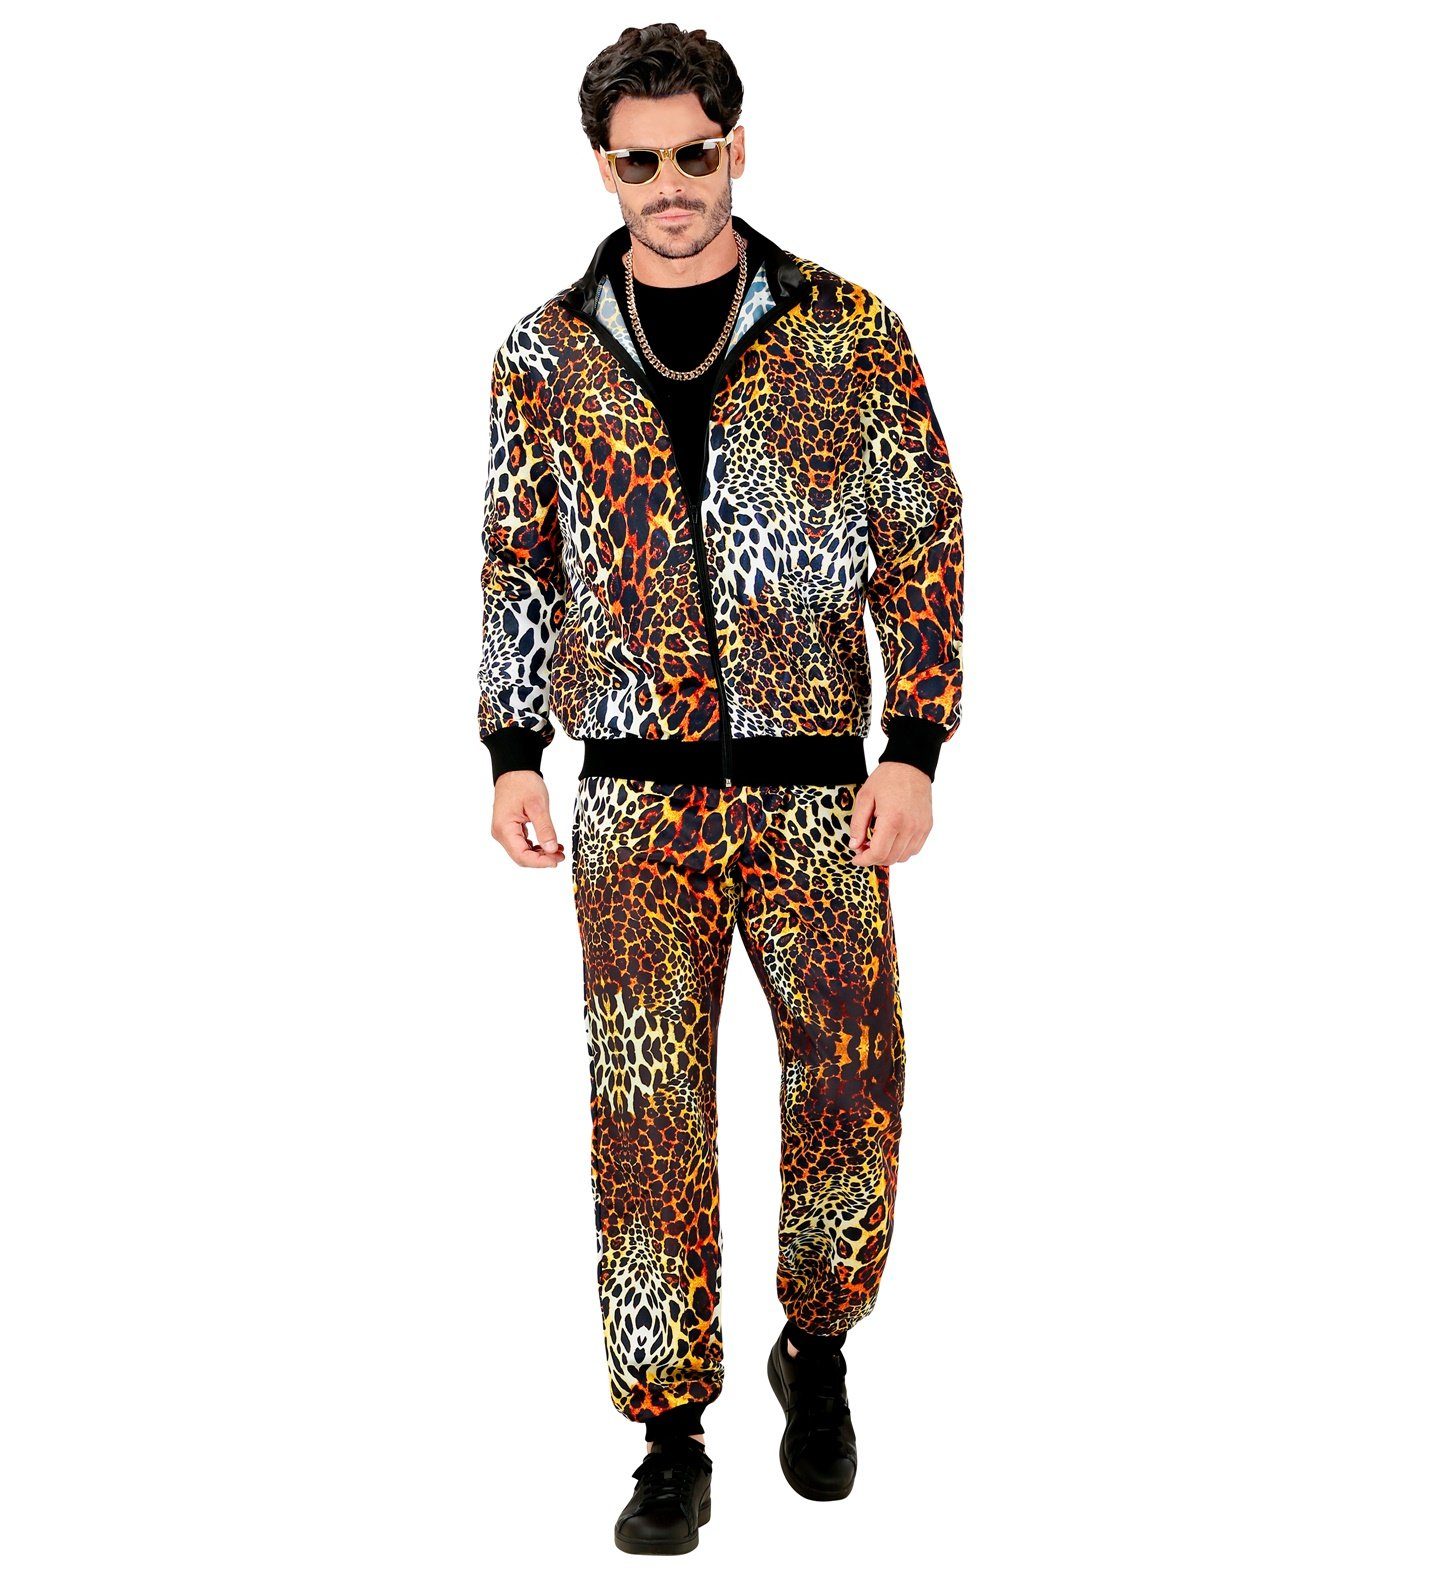 Widmann S.r.l. Kostüm Trainingsanzug 'Leopardenmuster' für Erwachsene